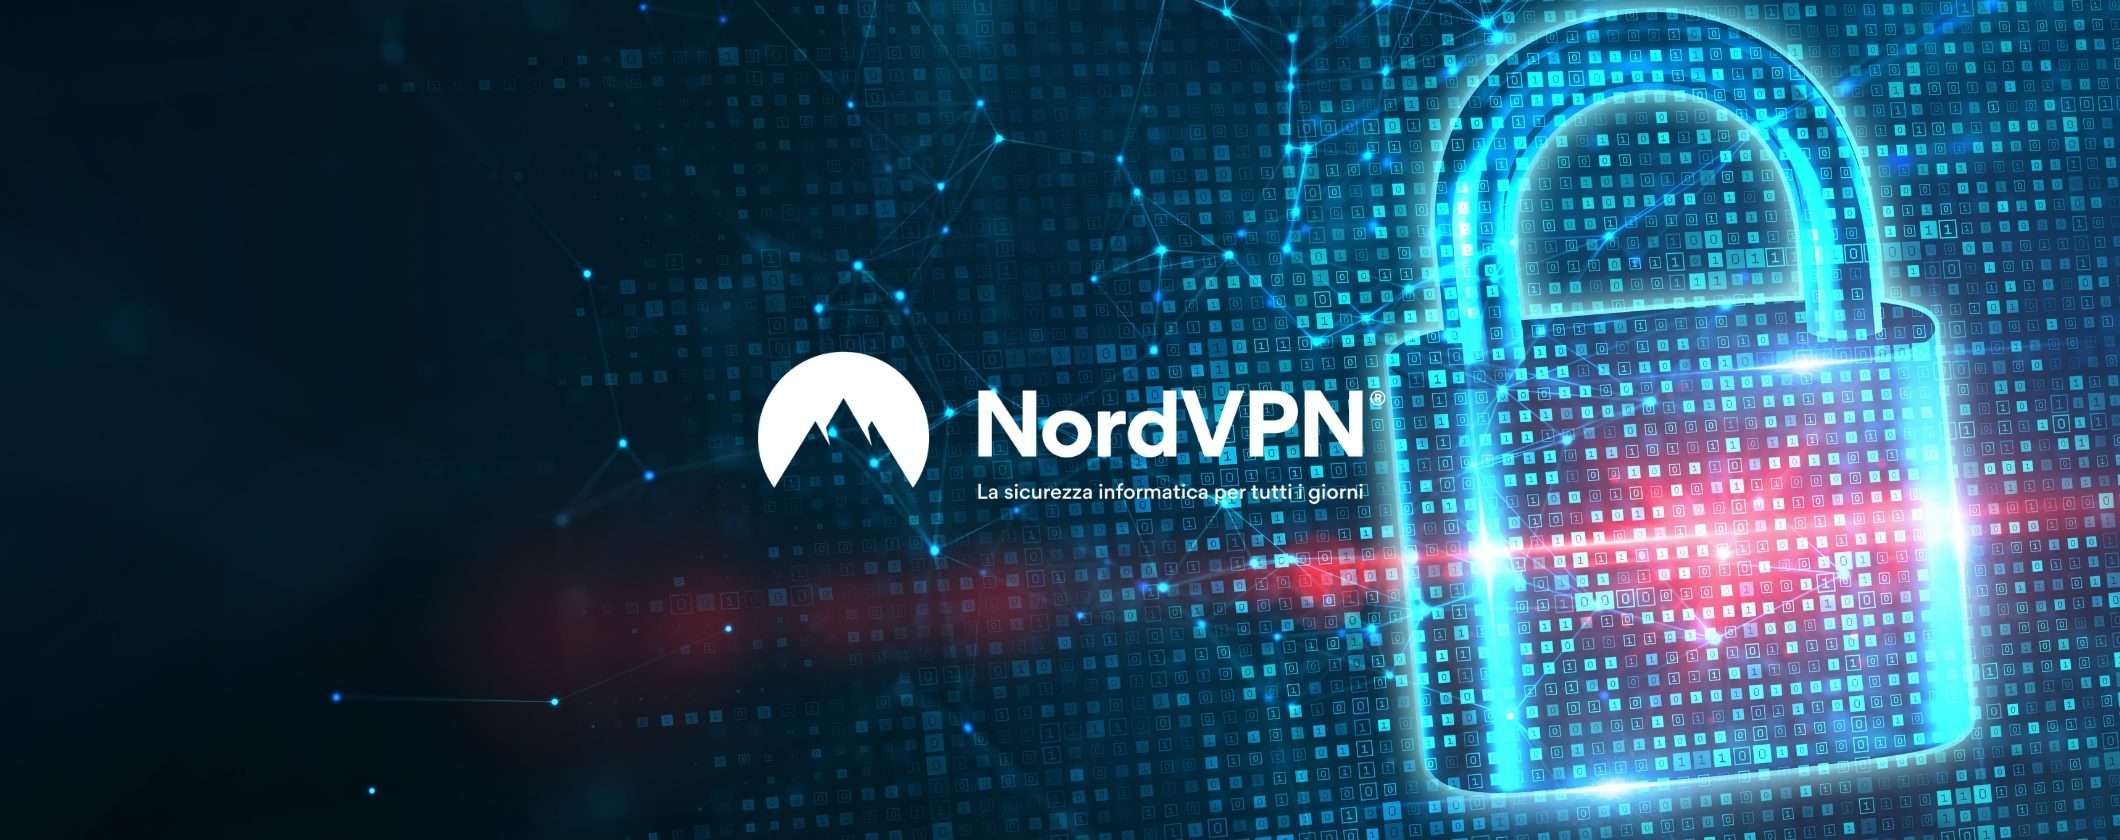 NordVPN conferma nuovamente la sua Politica No-Log